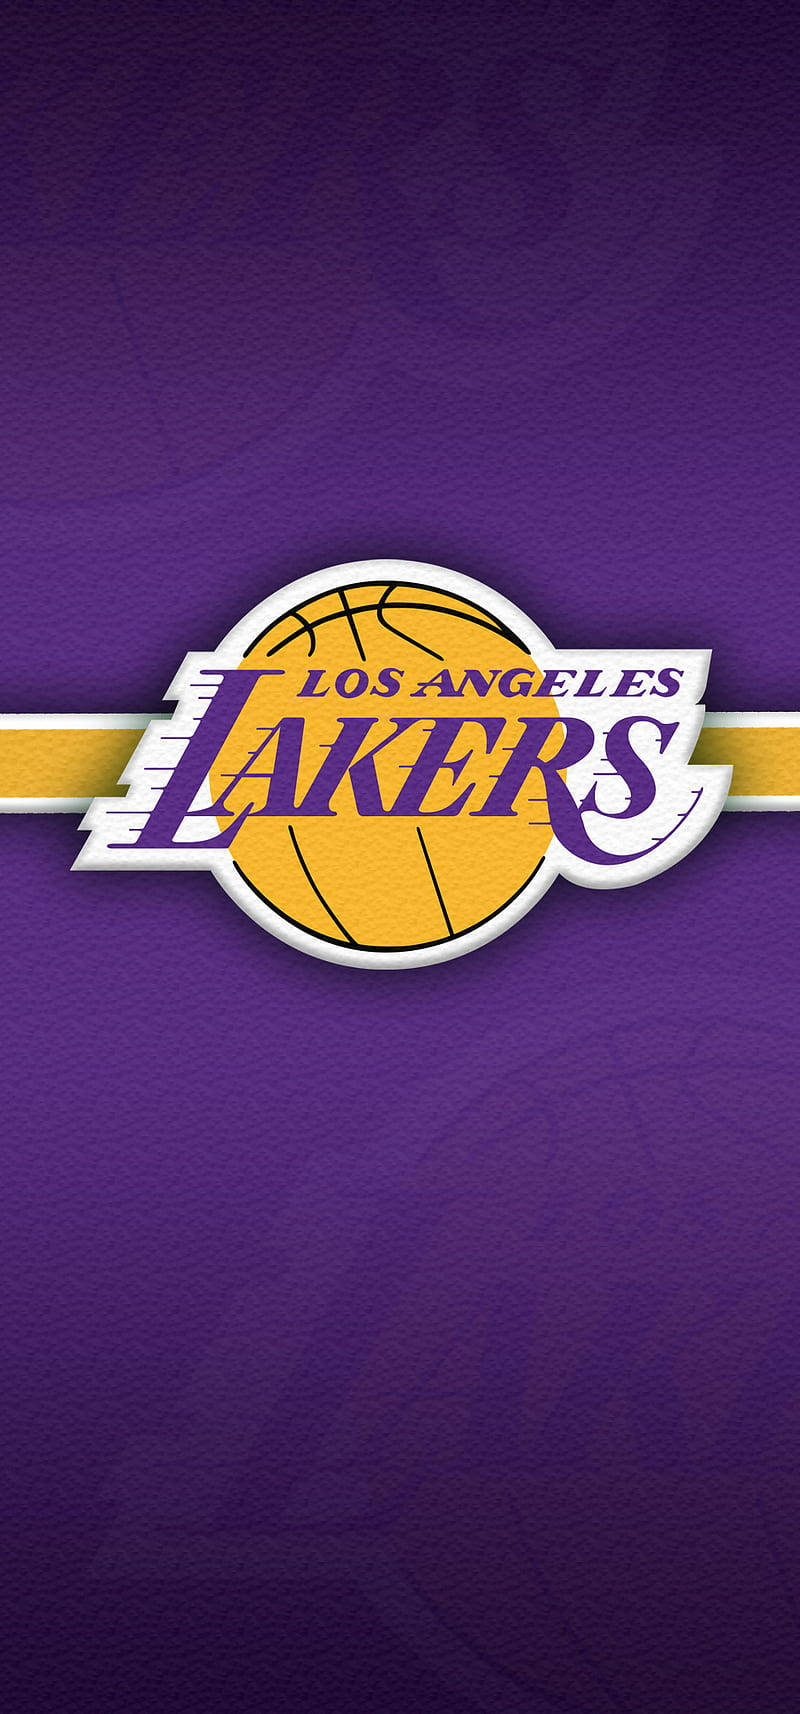 Bleibensie Über Die Los Angeles Lakers Auf Dem Laufenden, Egal Wo Sie Hingehen, Mit Diesem Eleganten Lakers Iphone. Wallpaper